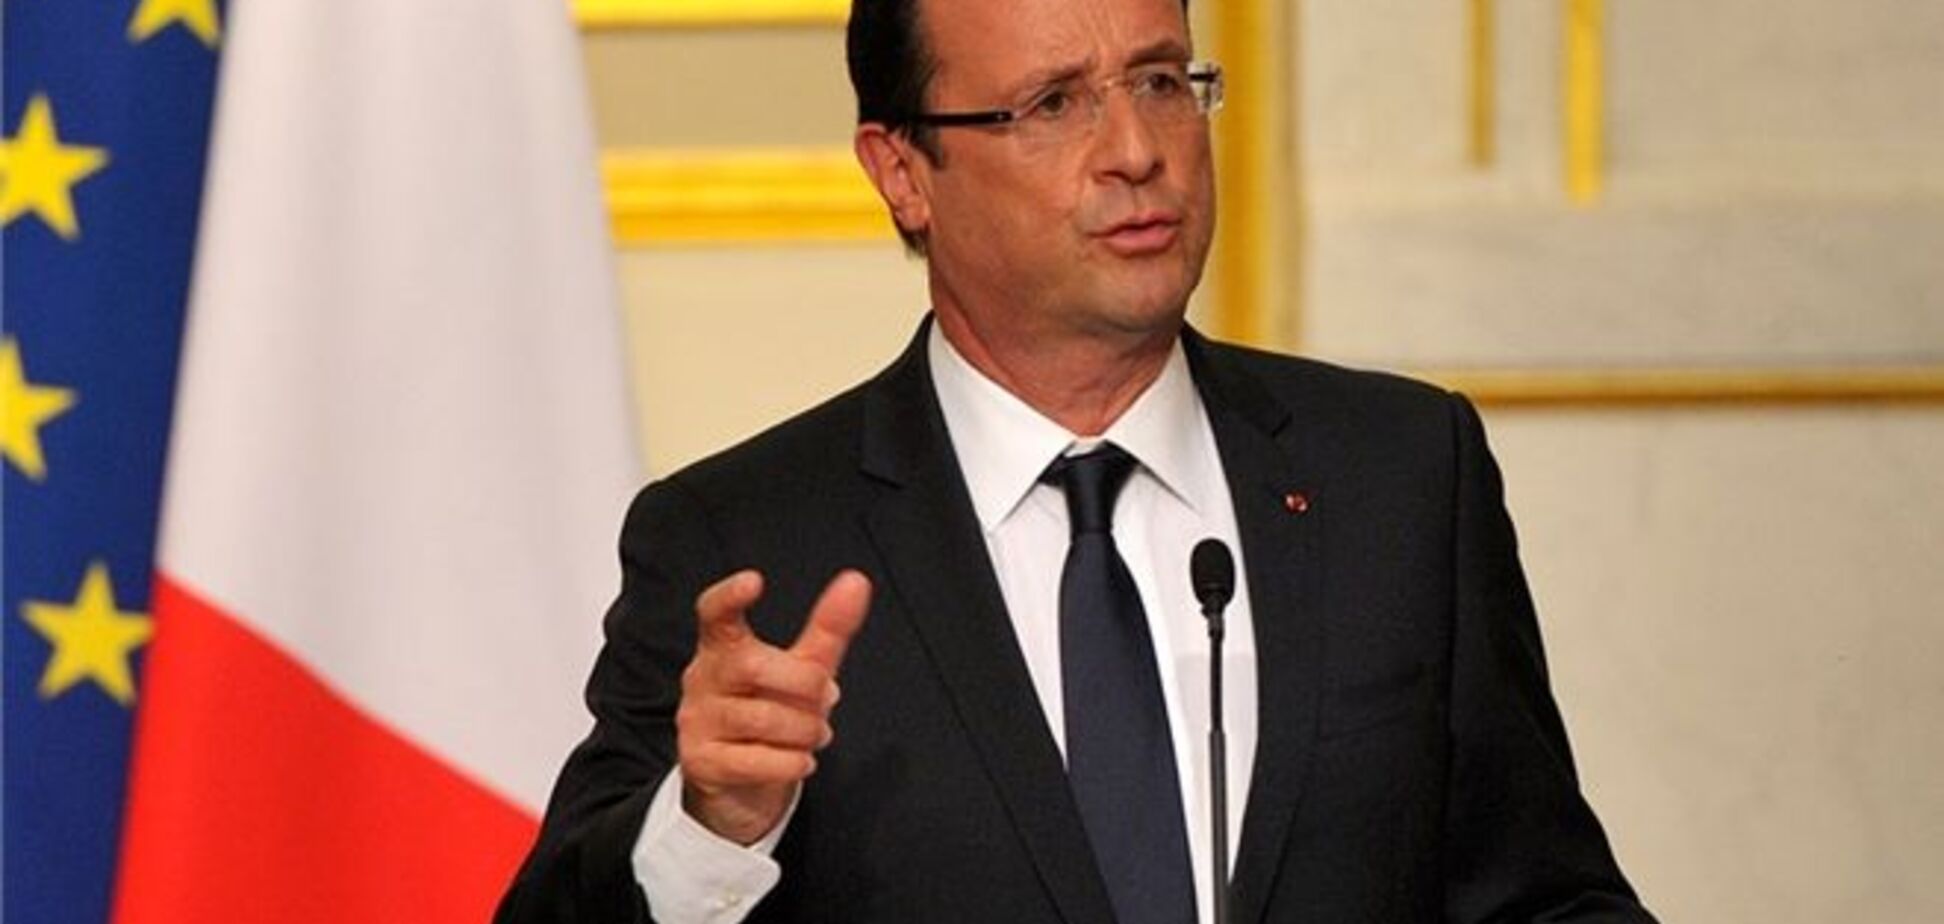 Президент Франции знает, когда США ударят по Сирии